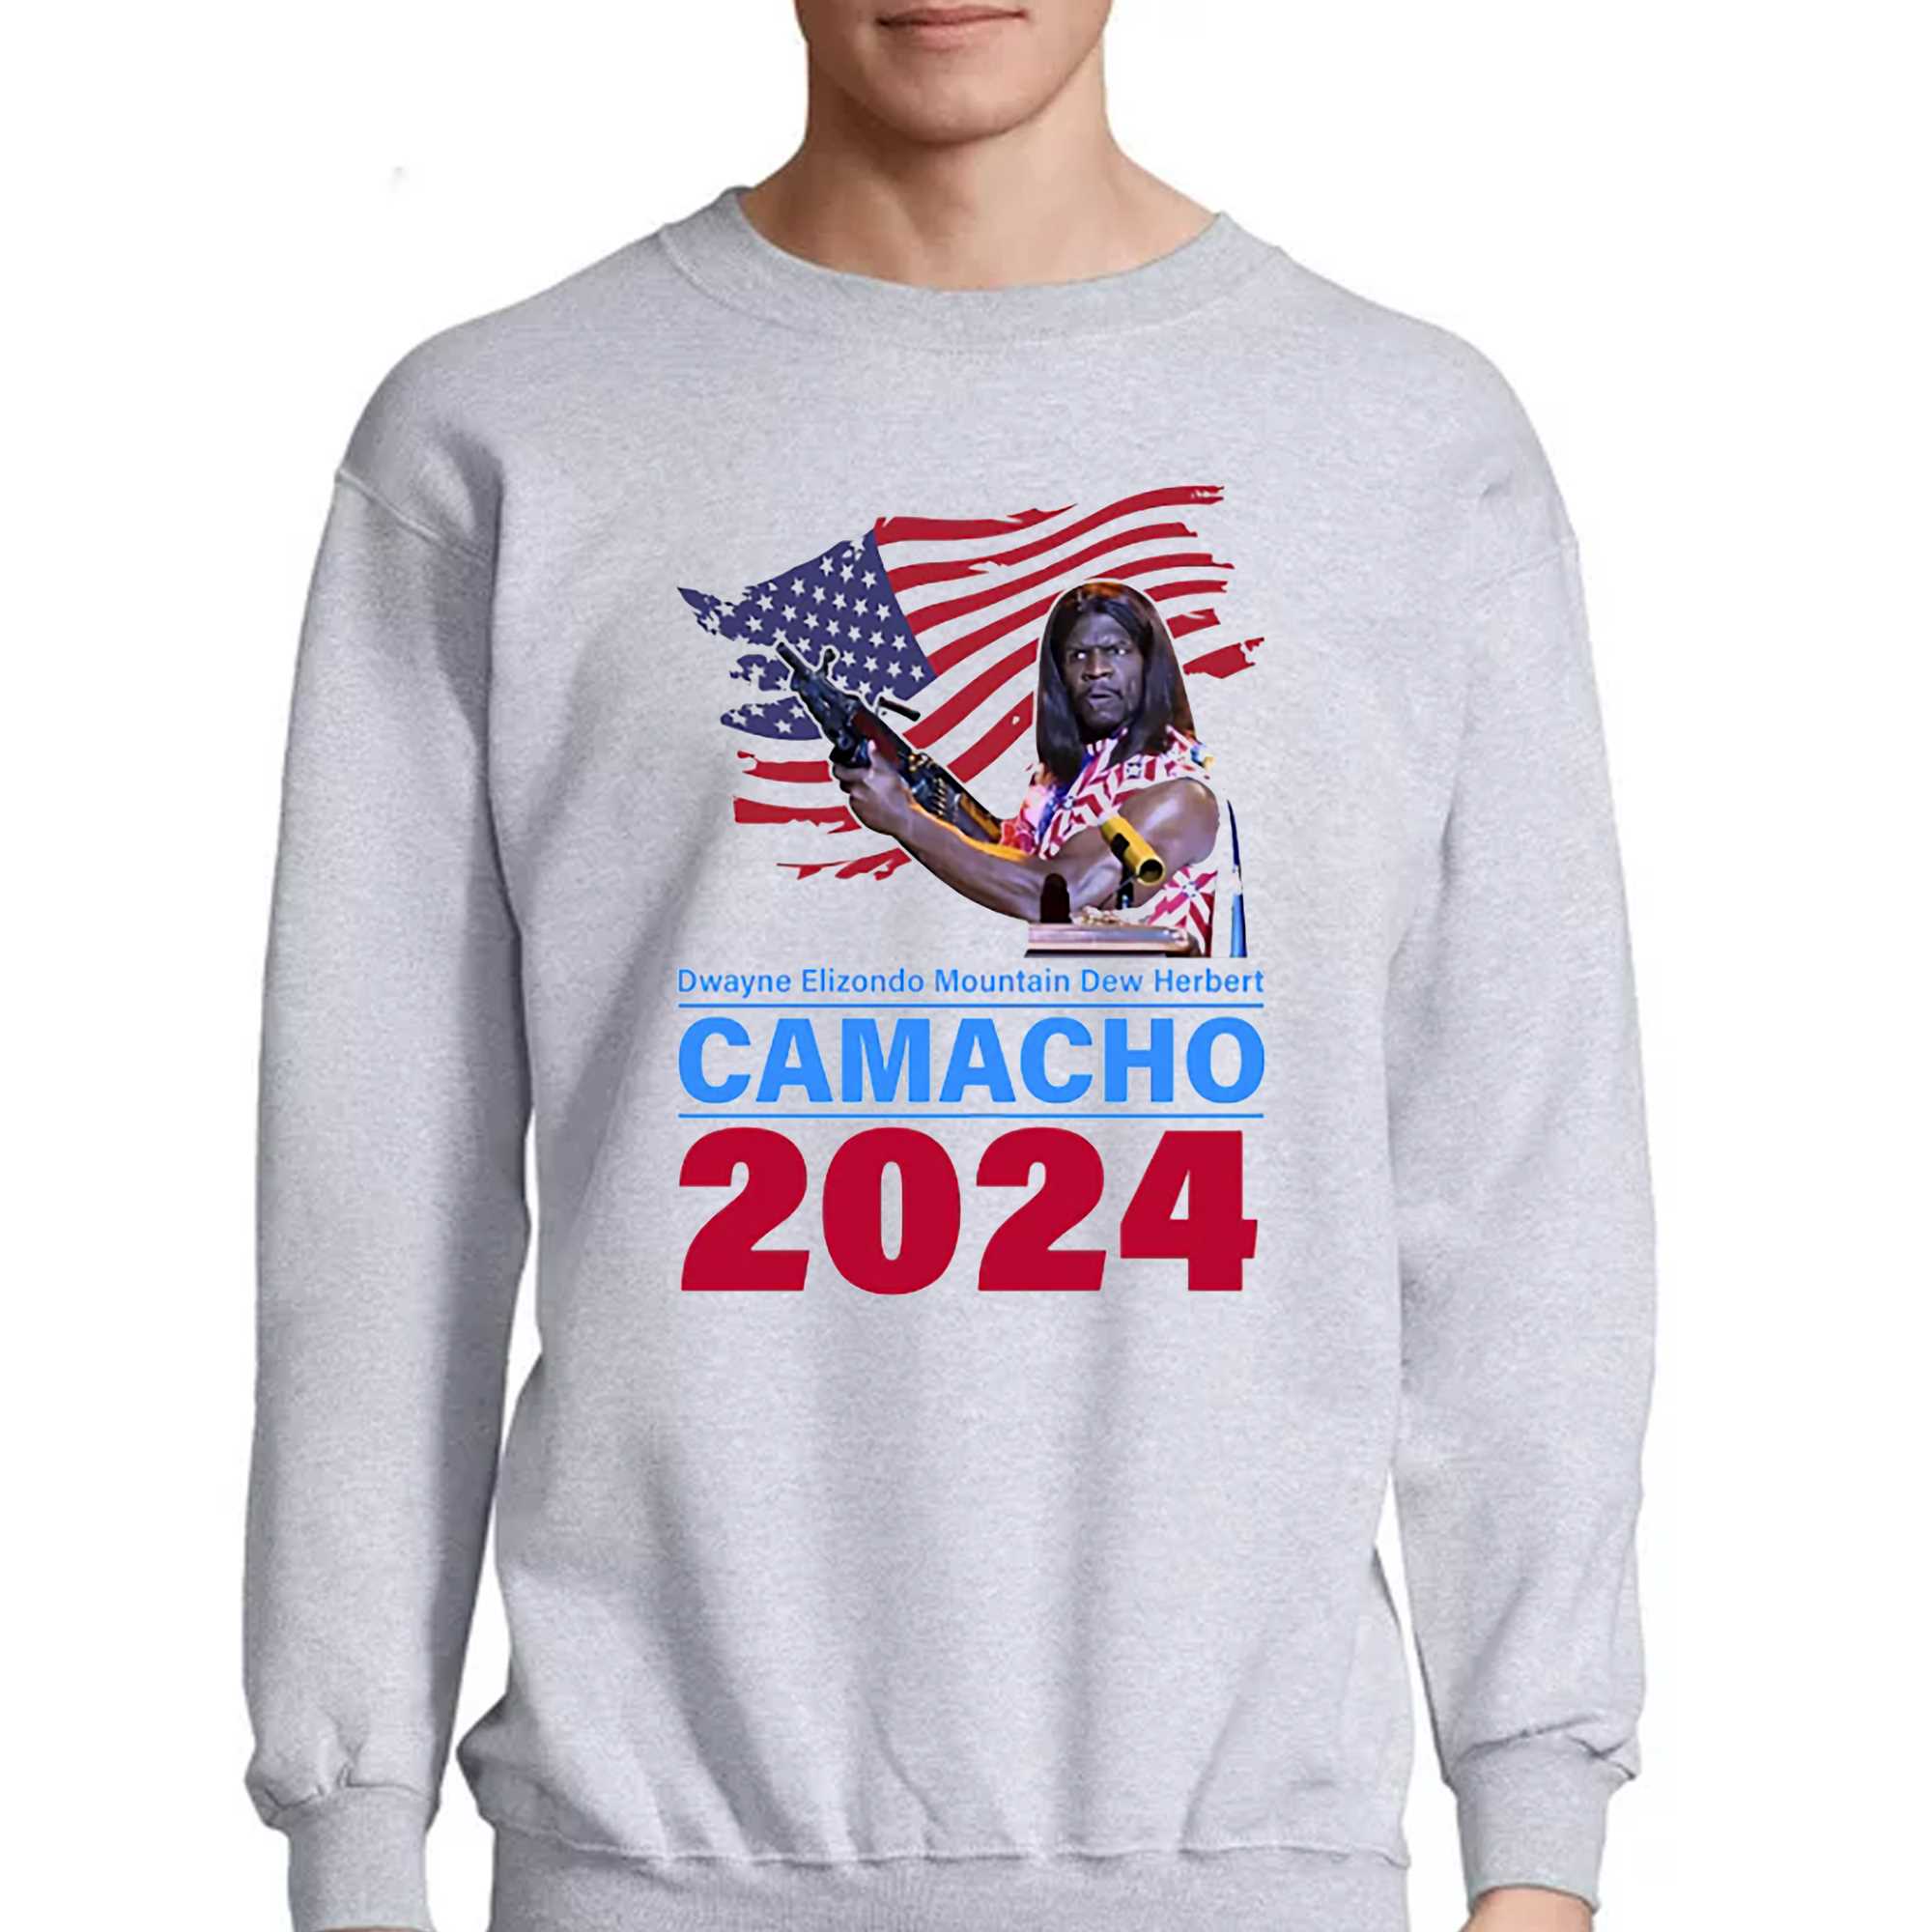 Camacho 2024 Dwayne Elizondo Mountain Dew Herbert T-shirt 